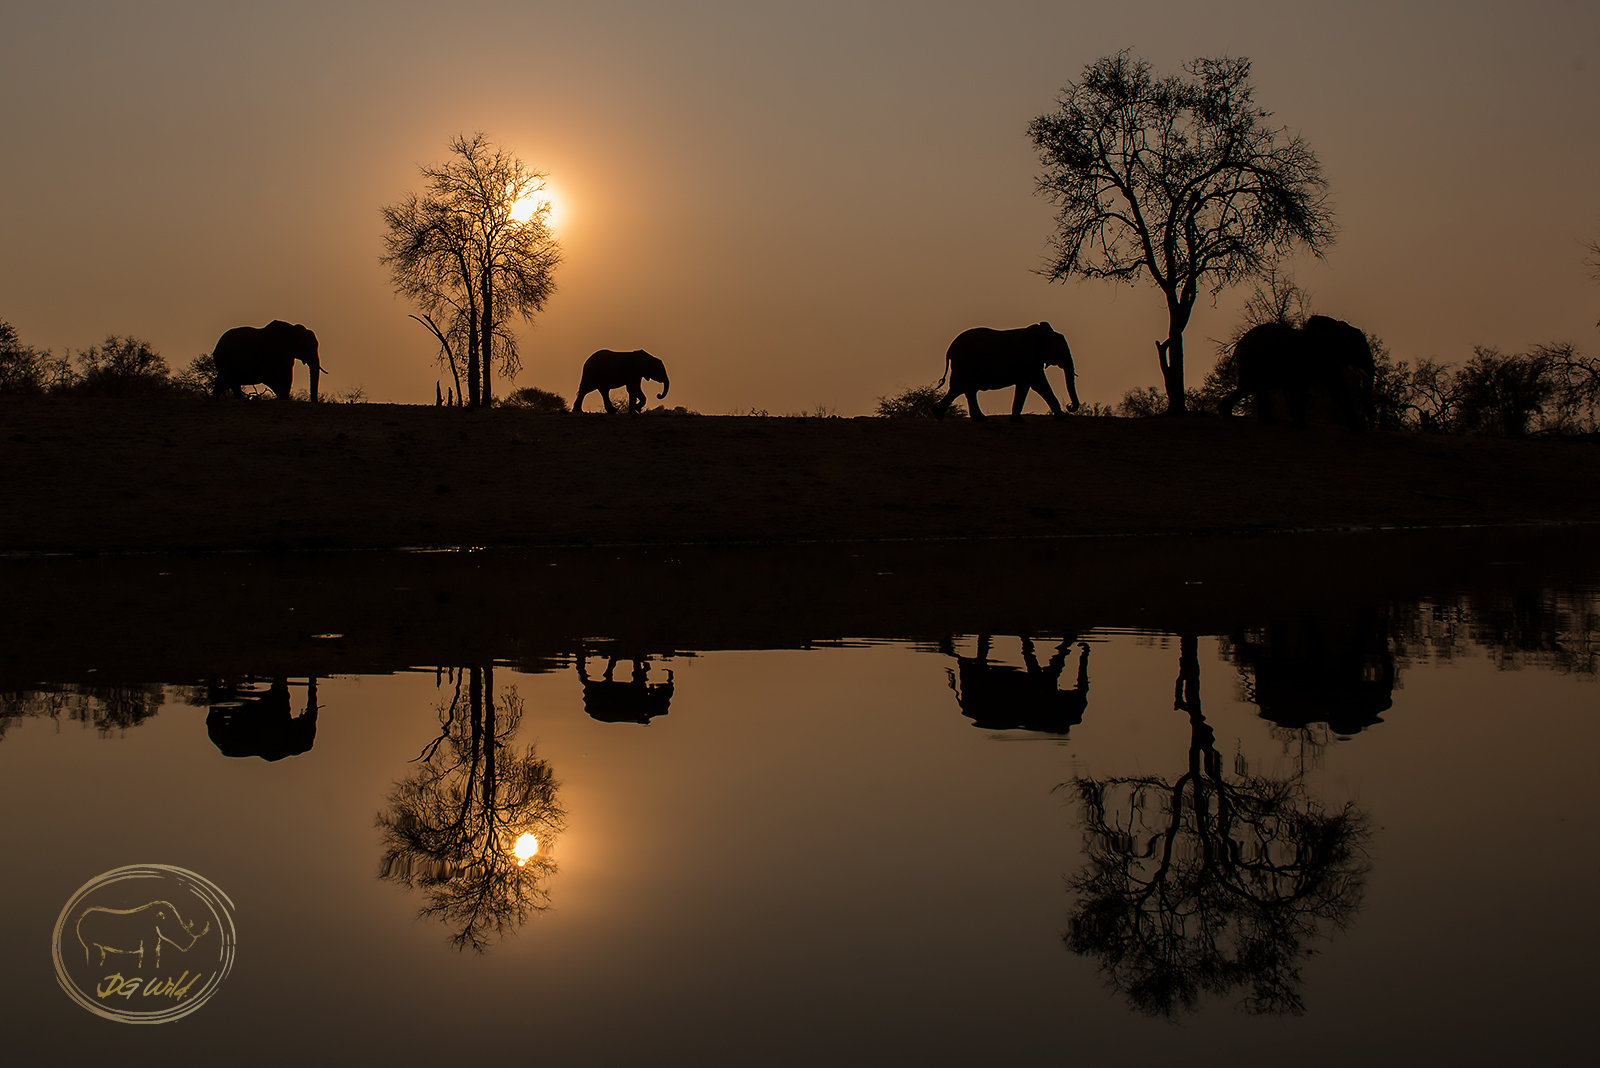 a group of elephants walking near water